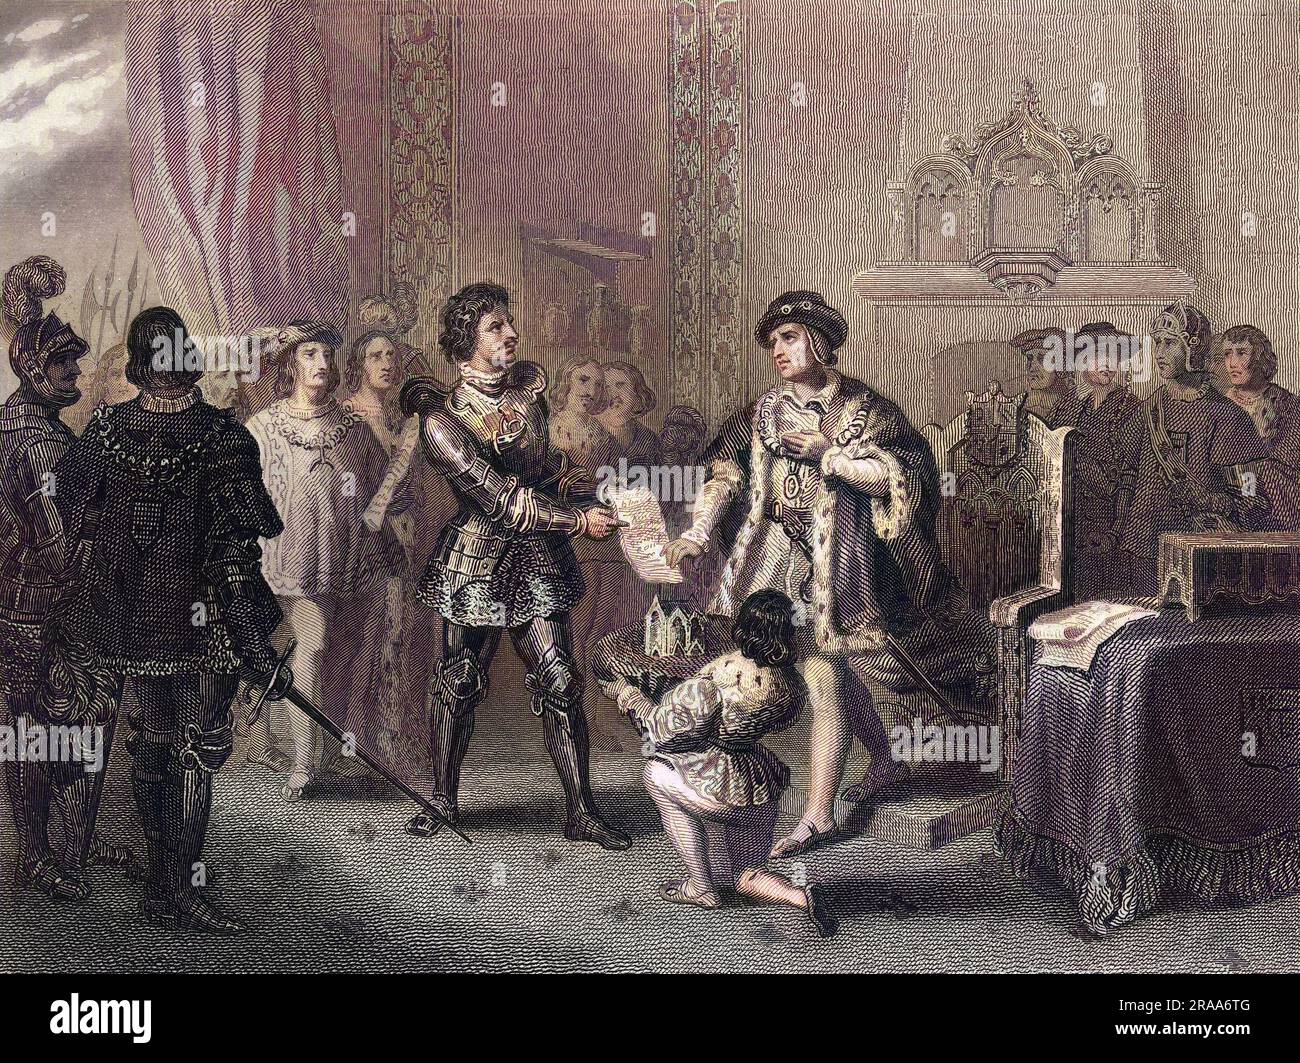 Ludwig XI trifft auf Charles le Temeraire, duc de Bourgogne, in Peronne : jeder will sich gegenseitig austricksen, aber Charles ist der kniffligere und härtere König. Datum: 14. Oktober 1468 Stockfoto